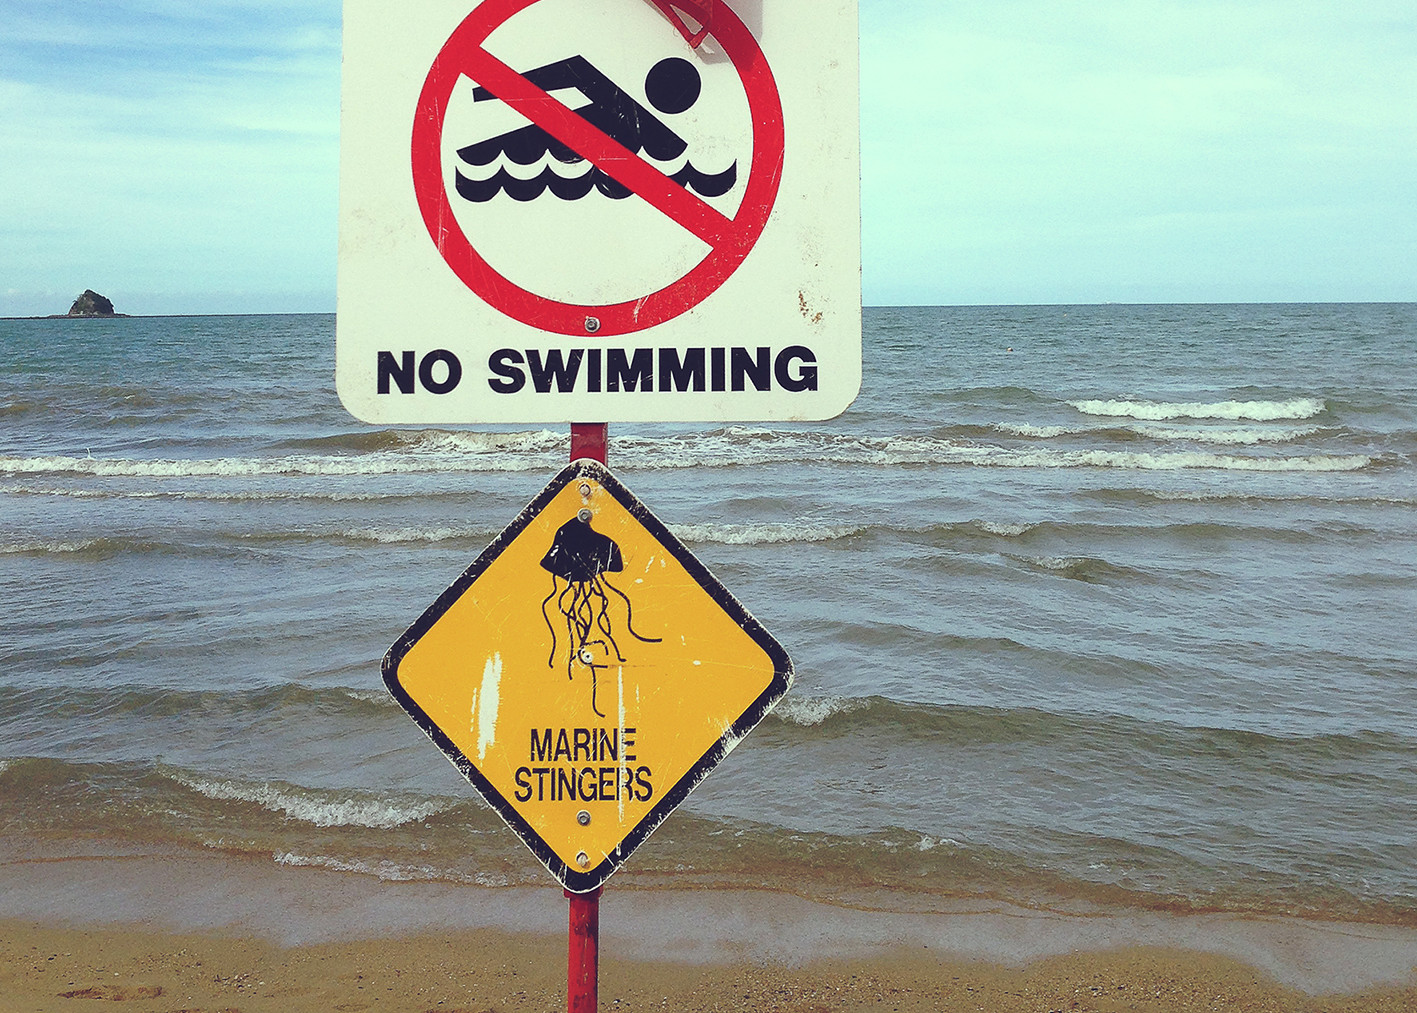 quallen in australien, schild, warning, marine stingers, schwimmen in australien, roadtrip, miles and shores, vorbereitung